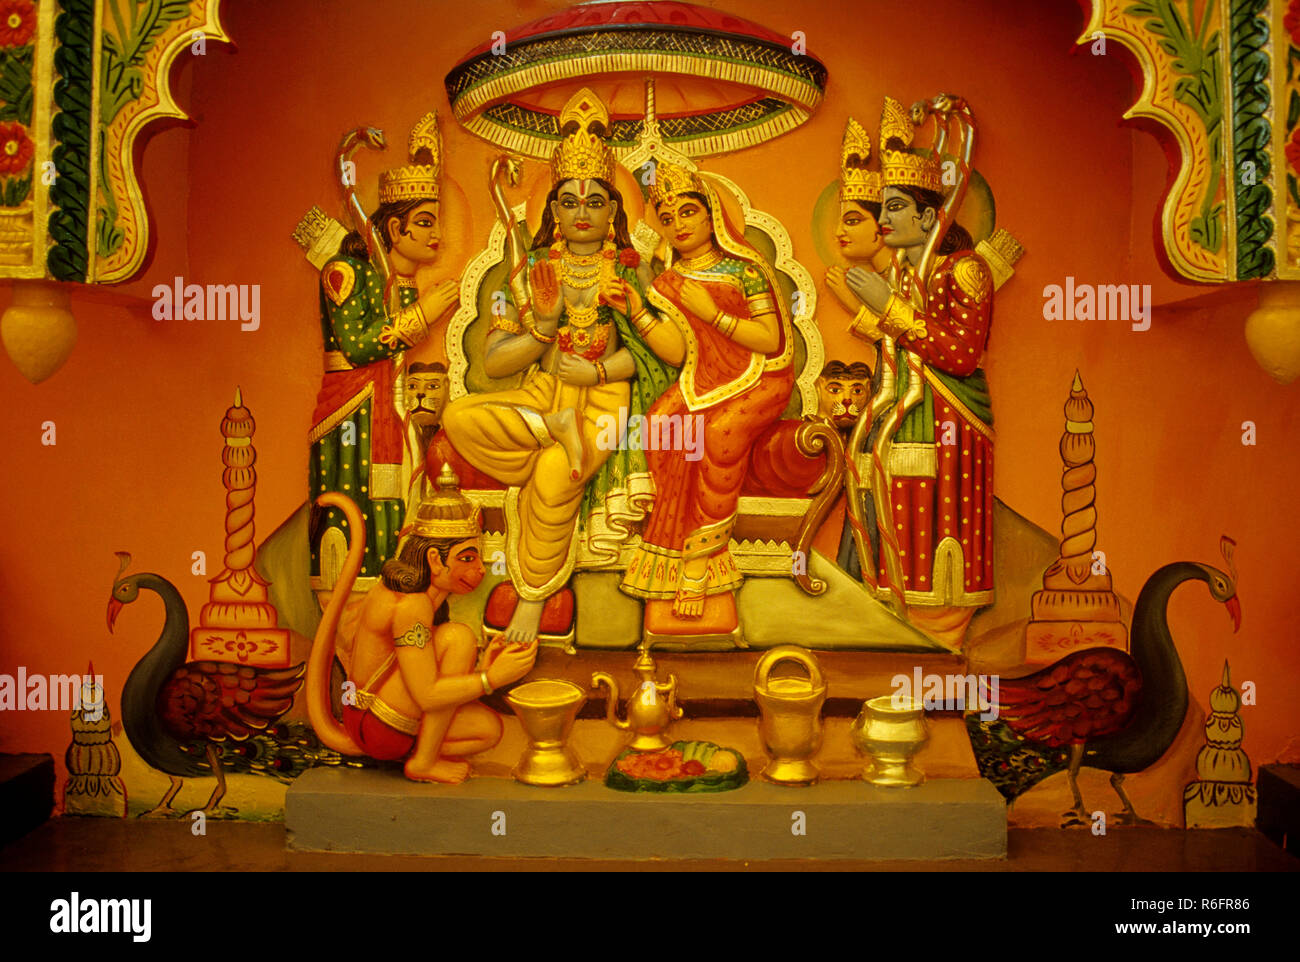 Rama sita and lakshmana hi-res stock photography and images - Alamy